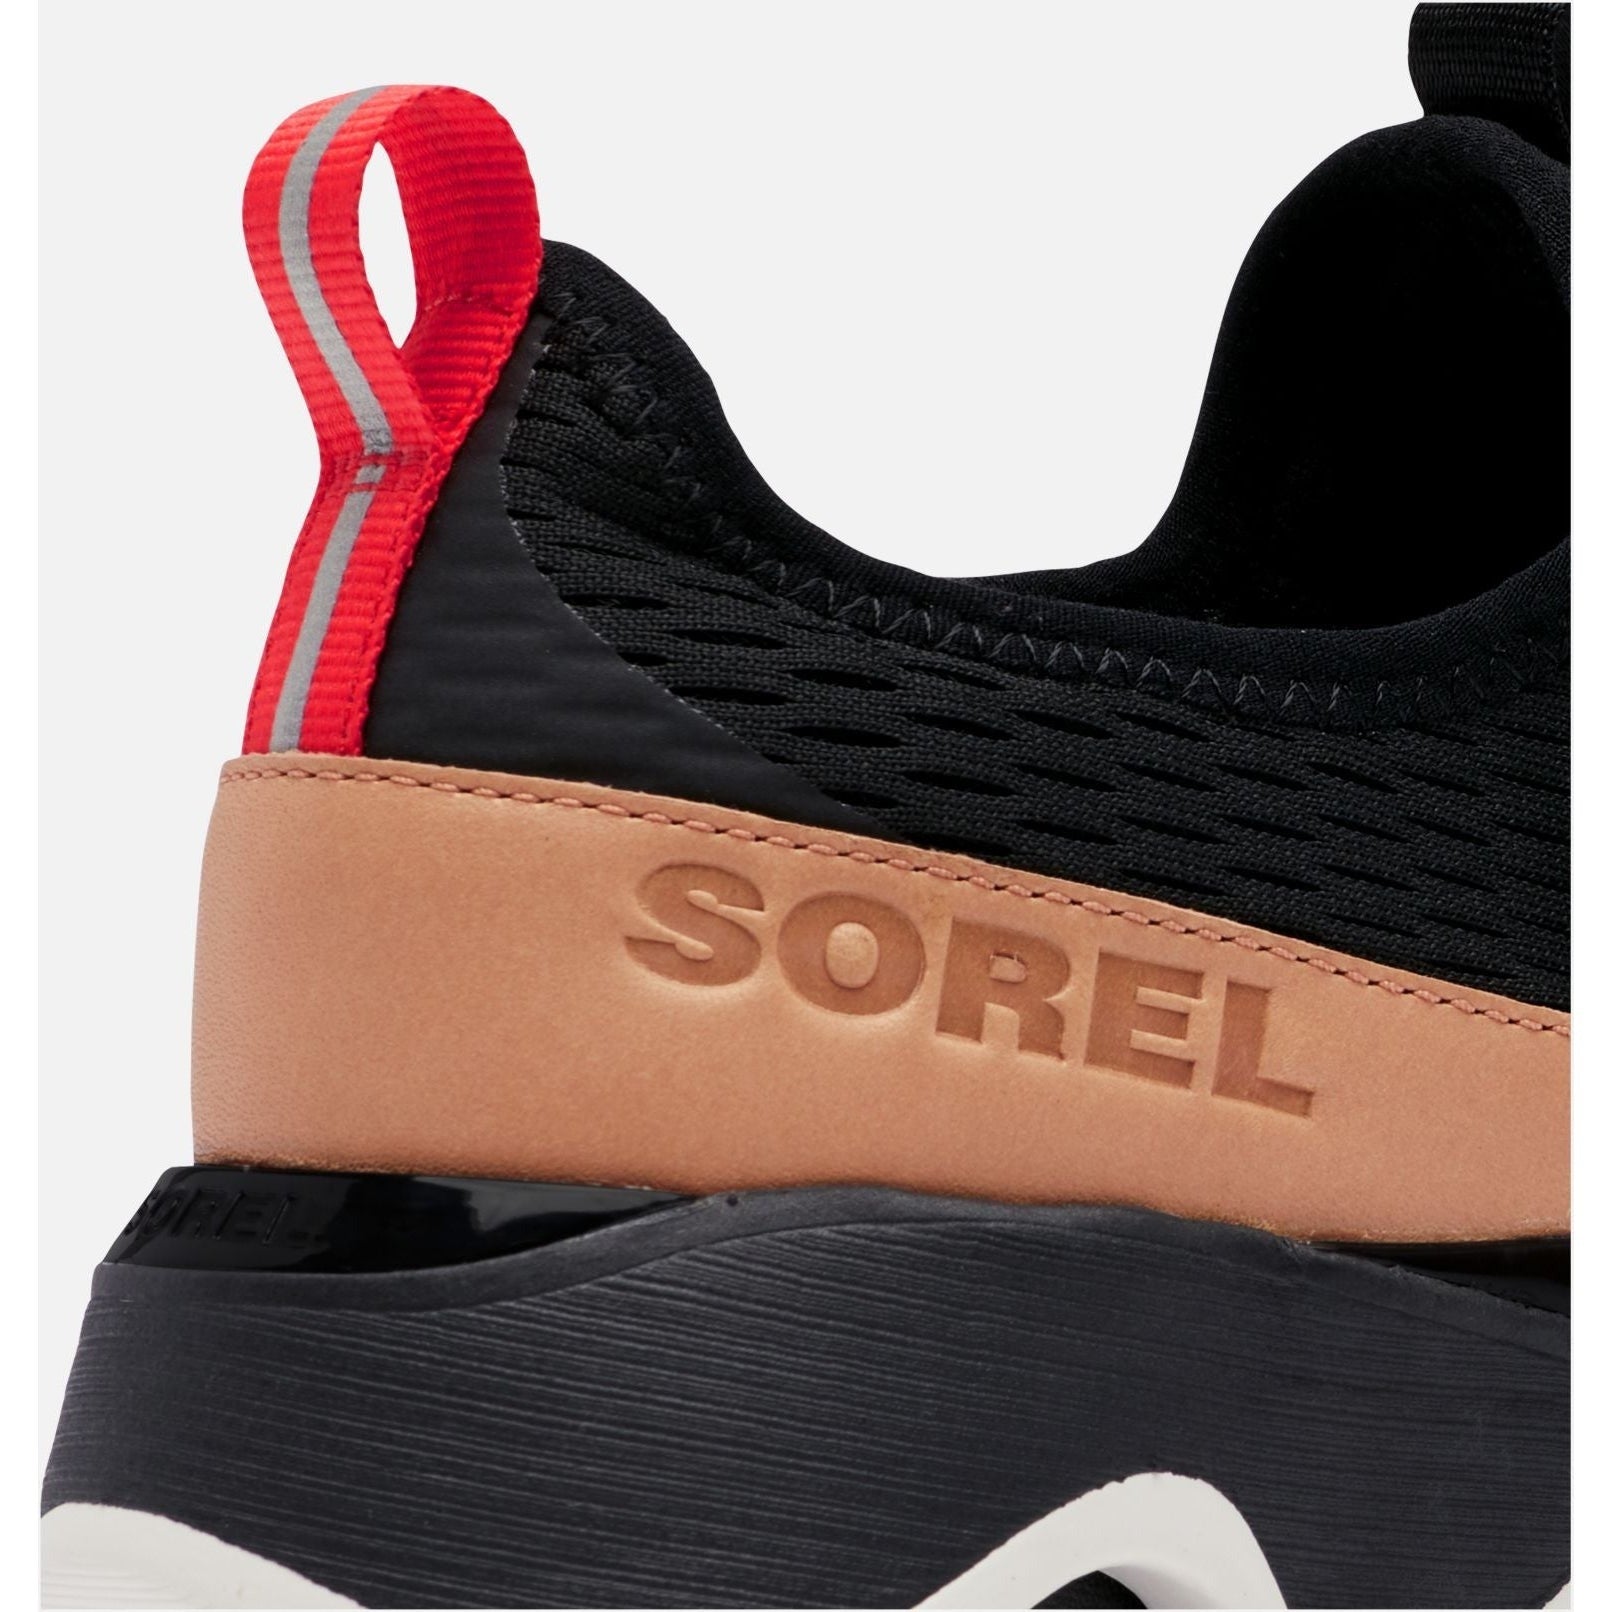 Sorel Women's Impact II Lace Sneaker